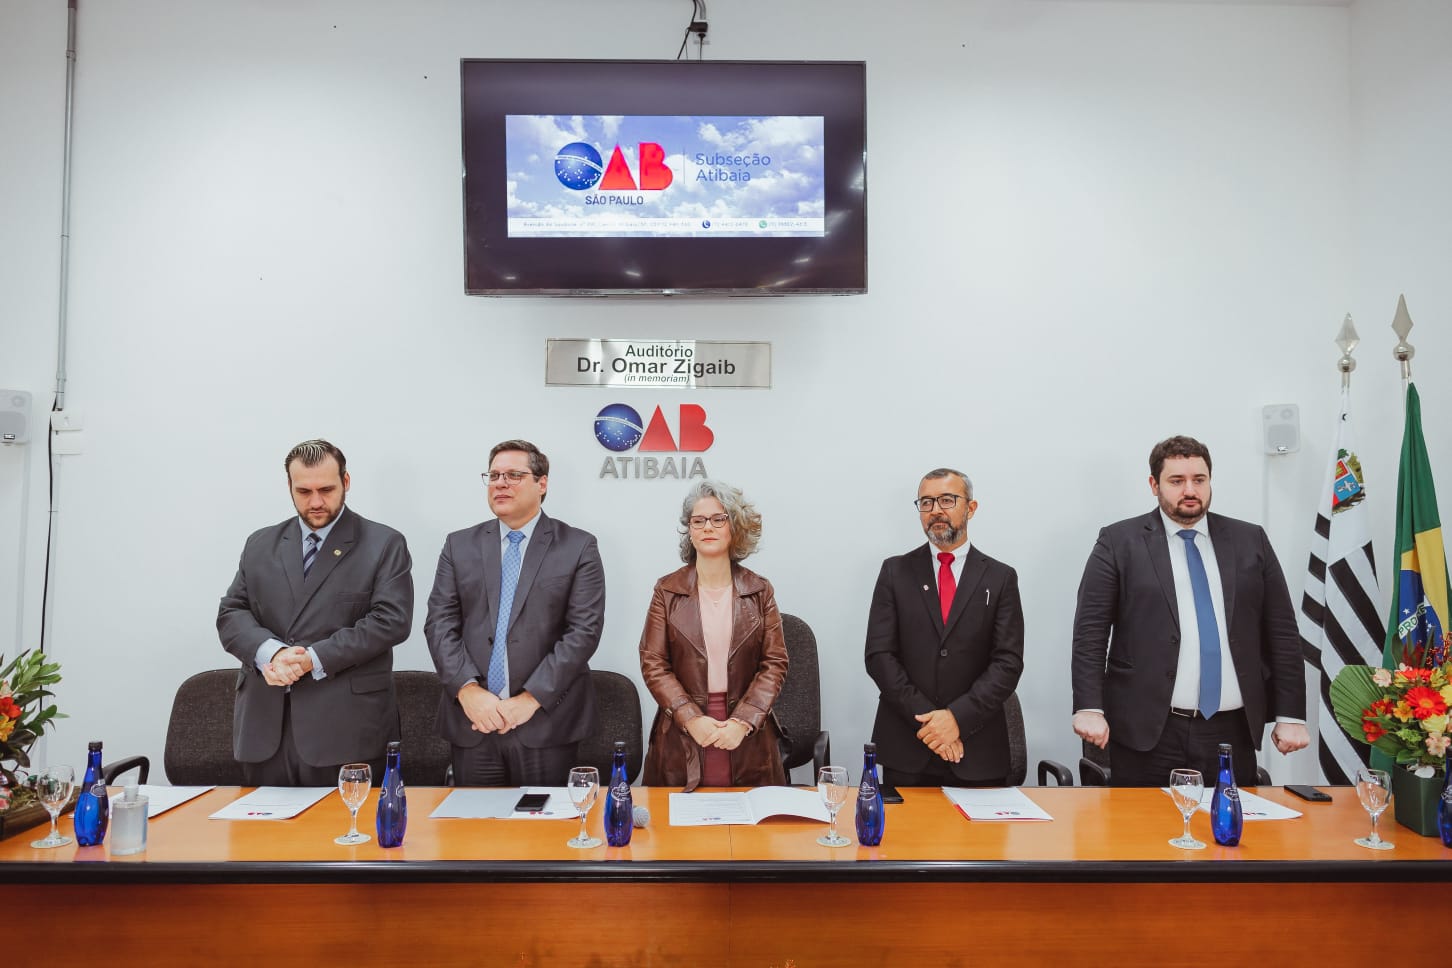 Diretores da OAB SP participam da cerimônia de posse da diretoria da Subseção de Atibaia